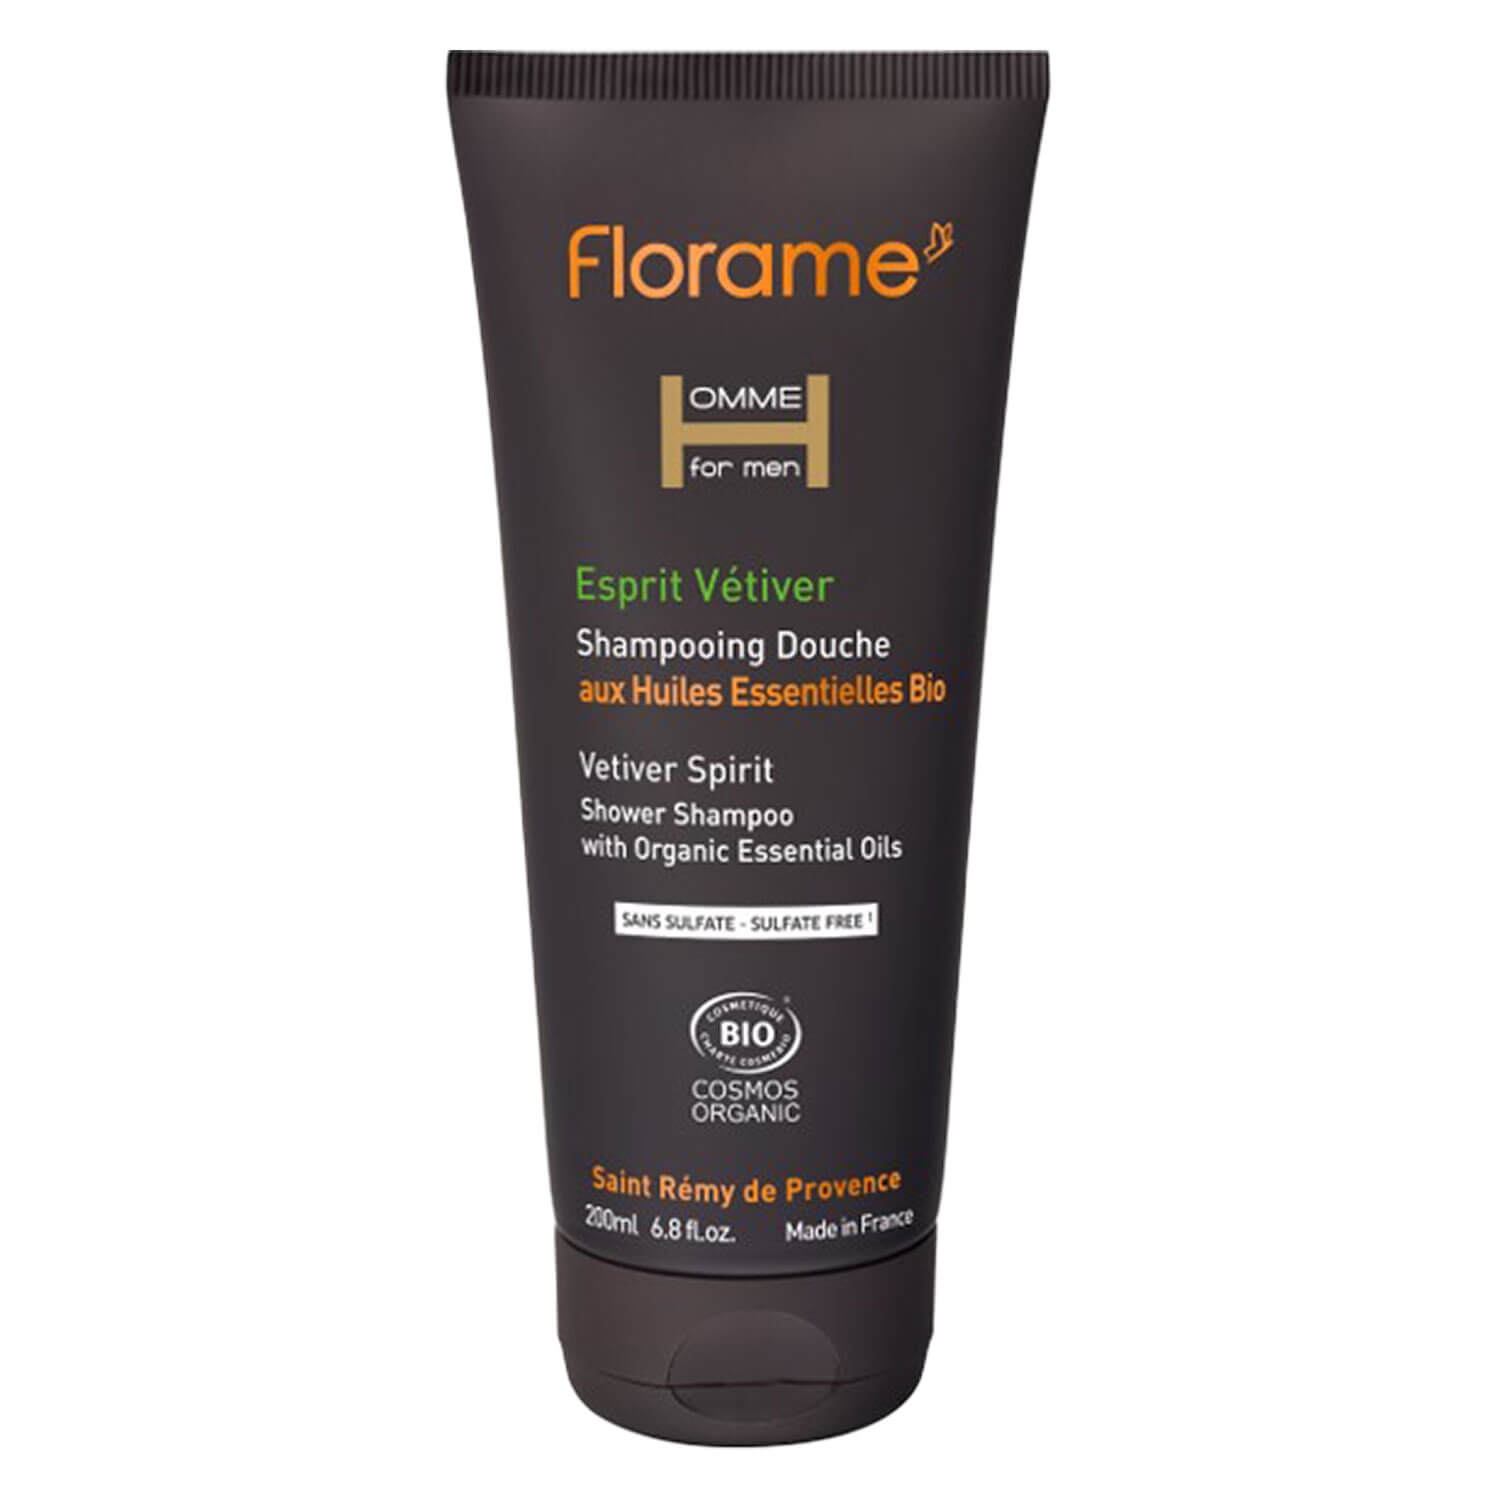 Produktbild von Florame Homme - Vetiver Spirit Shower Shampoo